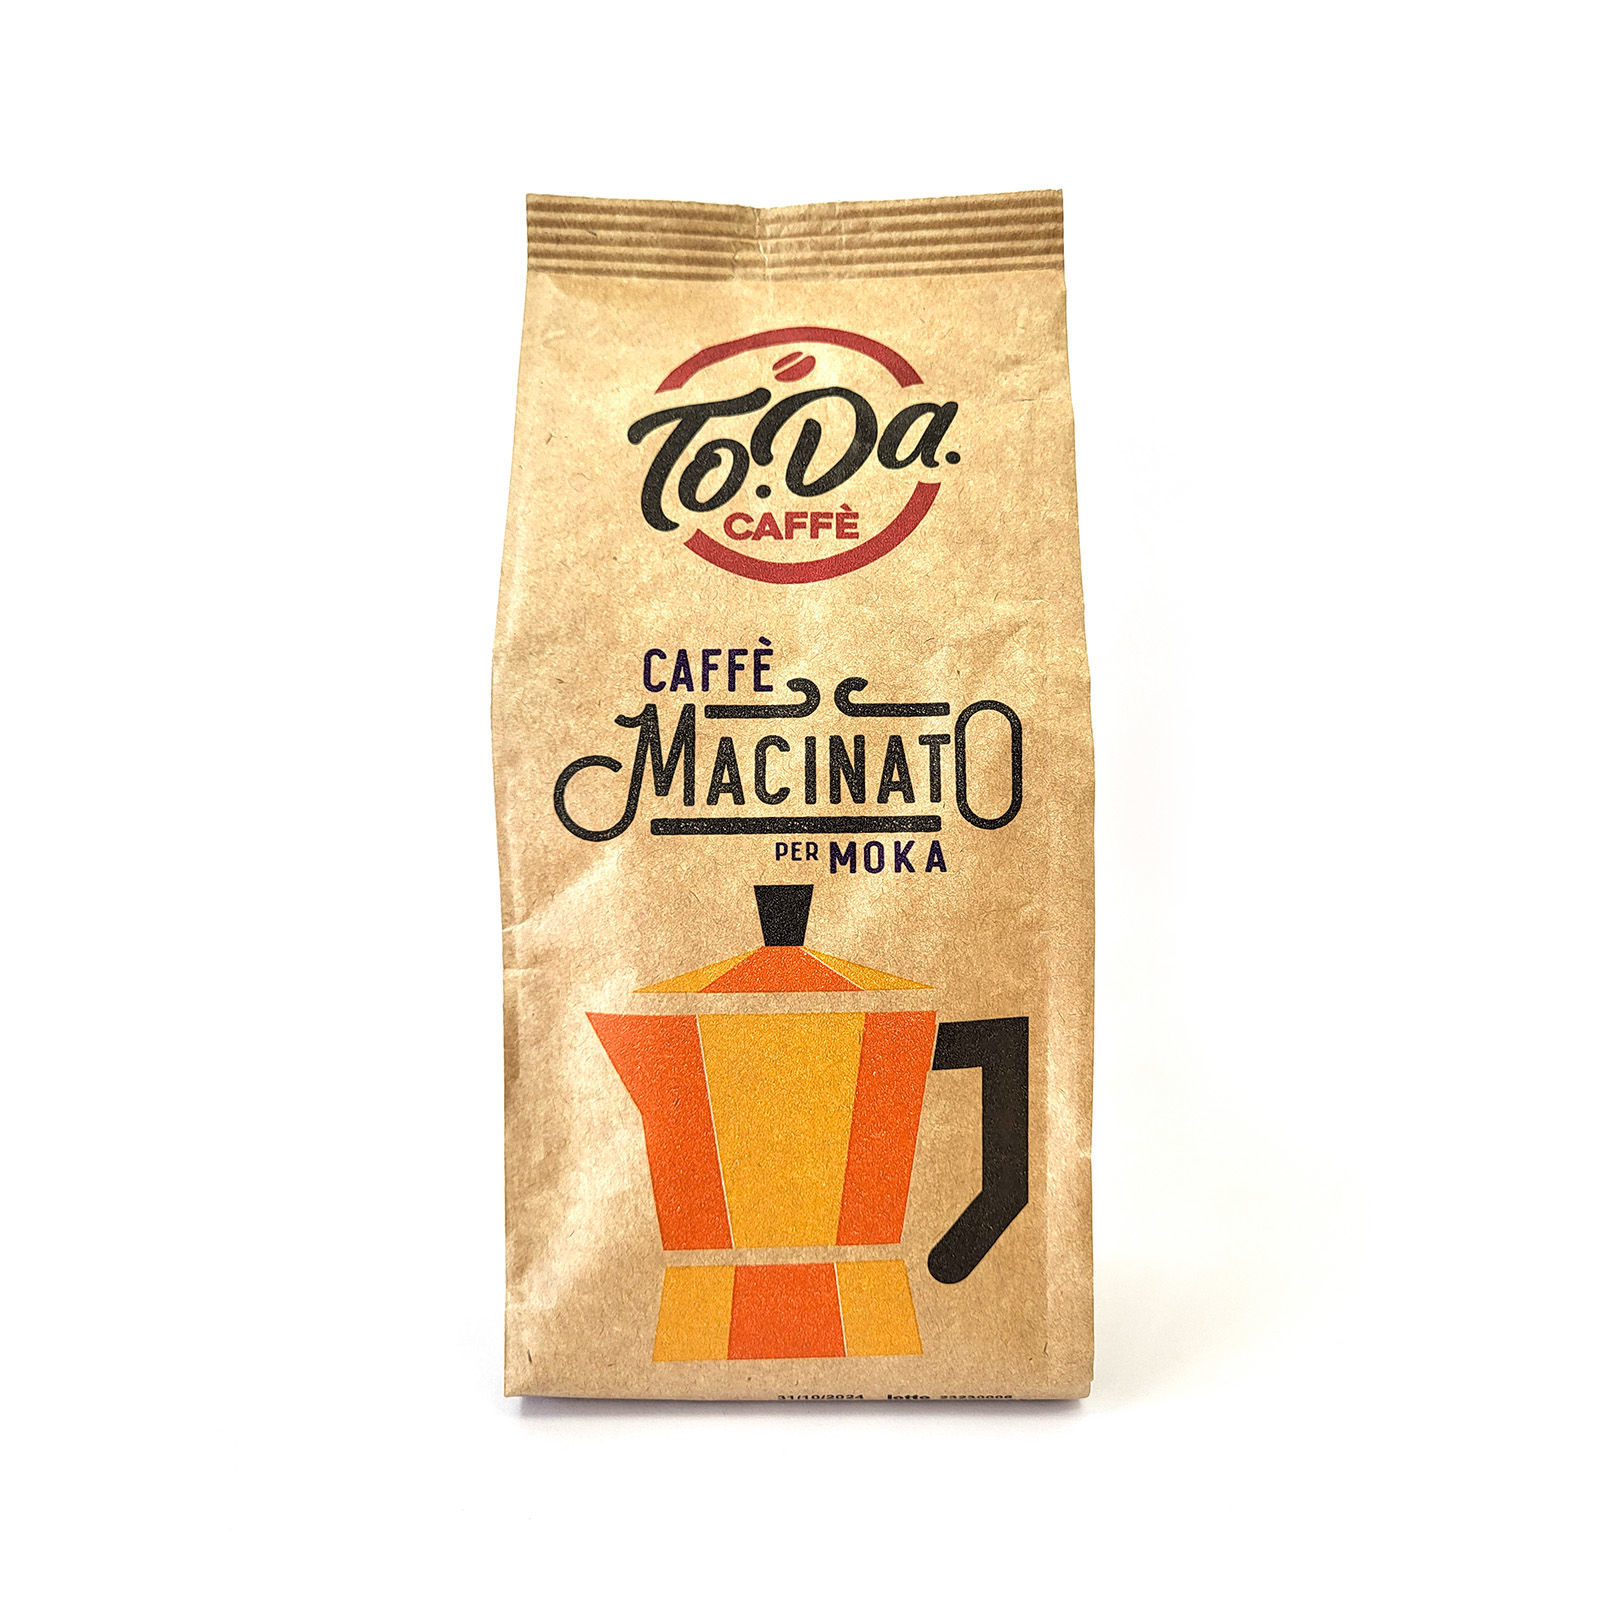 Giannini - Caffè macinato per moka Deka 250gr.